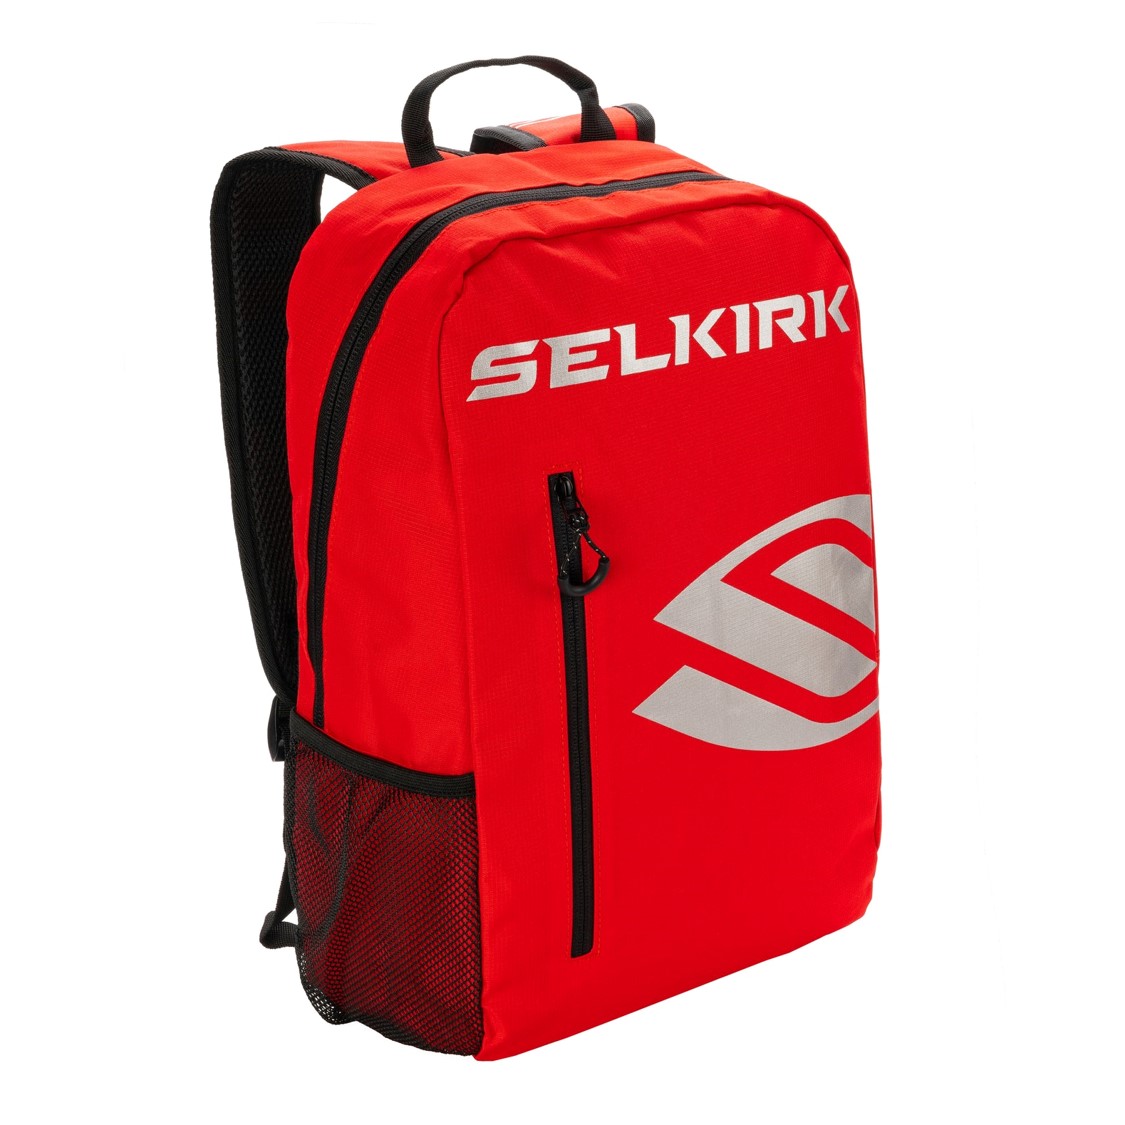 셀커크 코어라인 데이 백팩(SELKIRK Core Line Day Backpack)